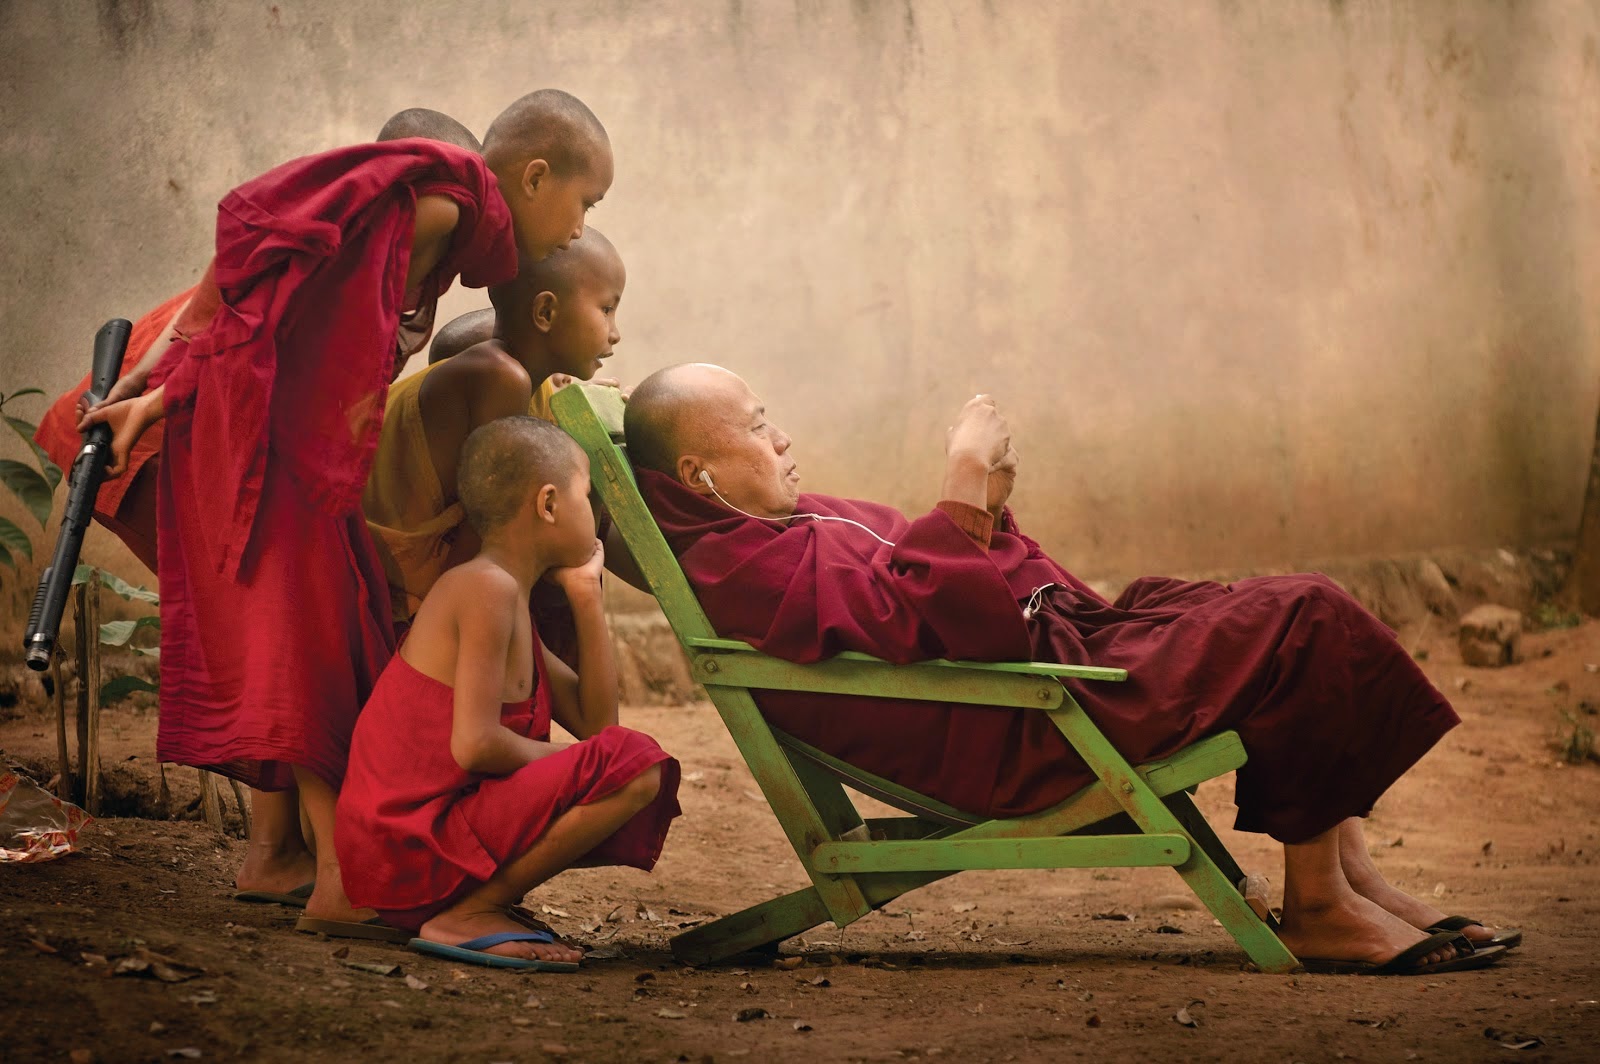 Men Outdoors Group Of People Monks Malaysia Children Earphones Flip Flops Bald Head Sitting 1600x1064